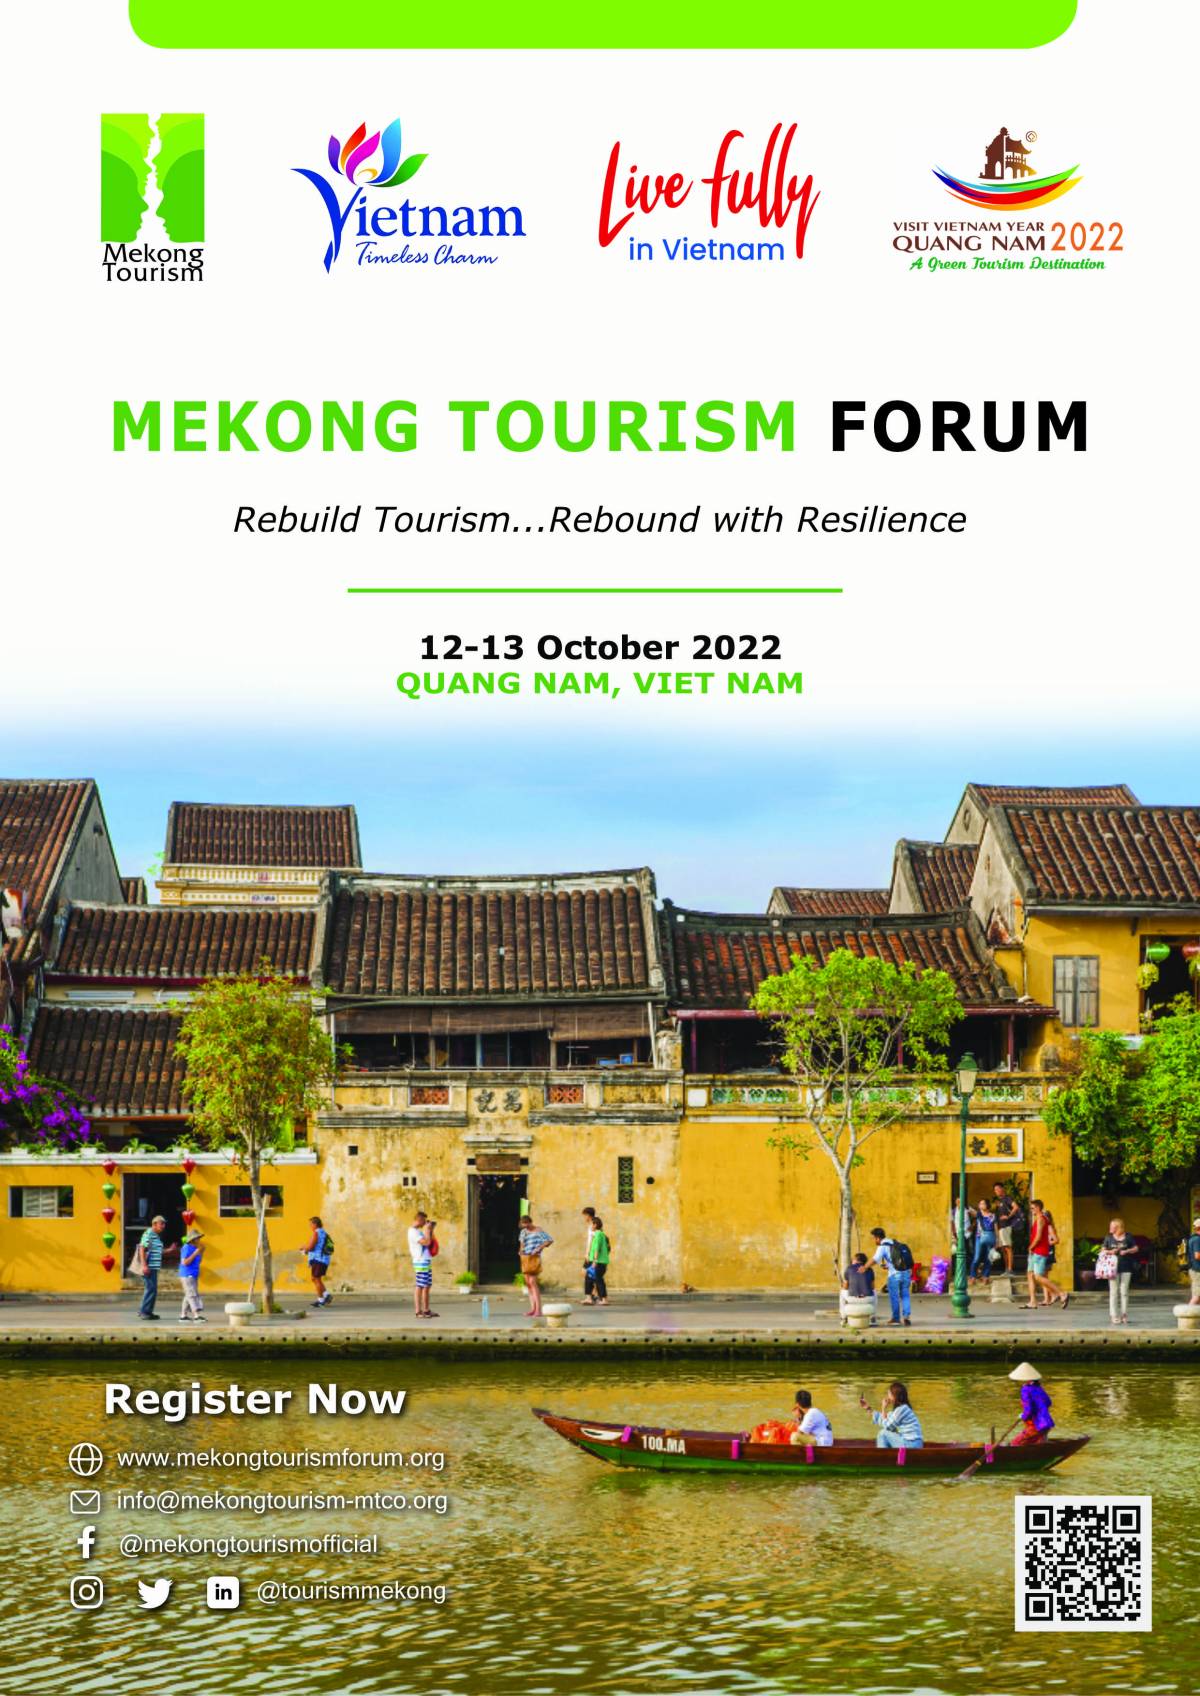 Mekong Tourism Forum Kicks off October 12, 2022